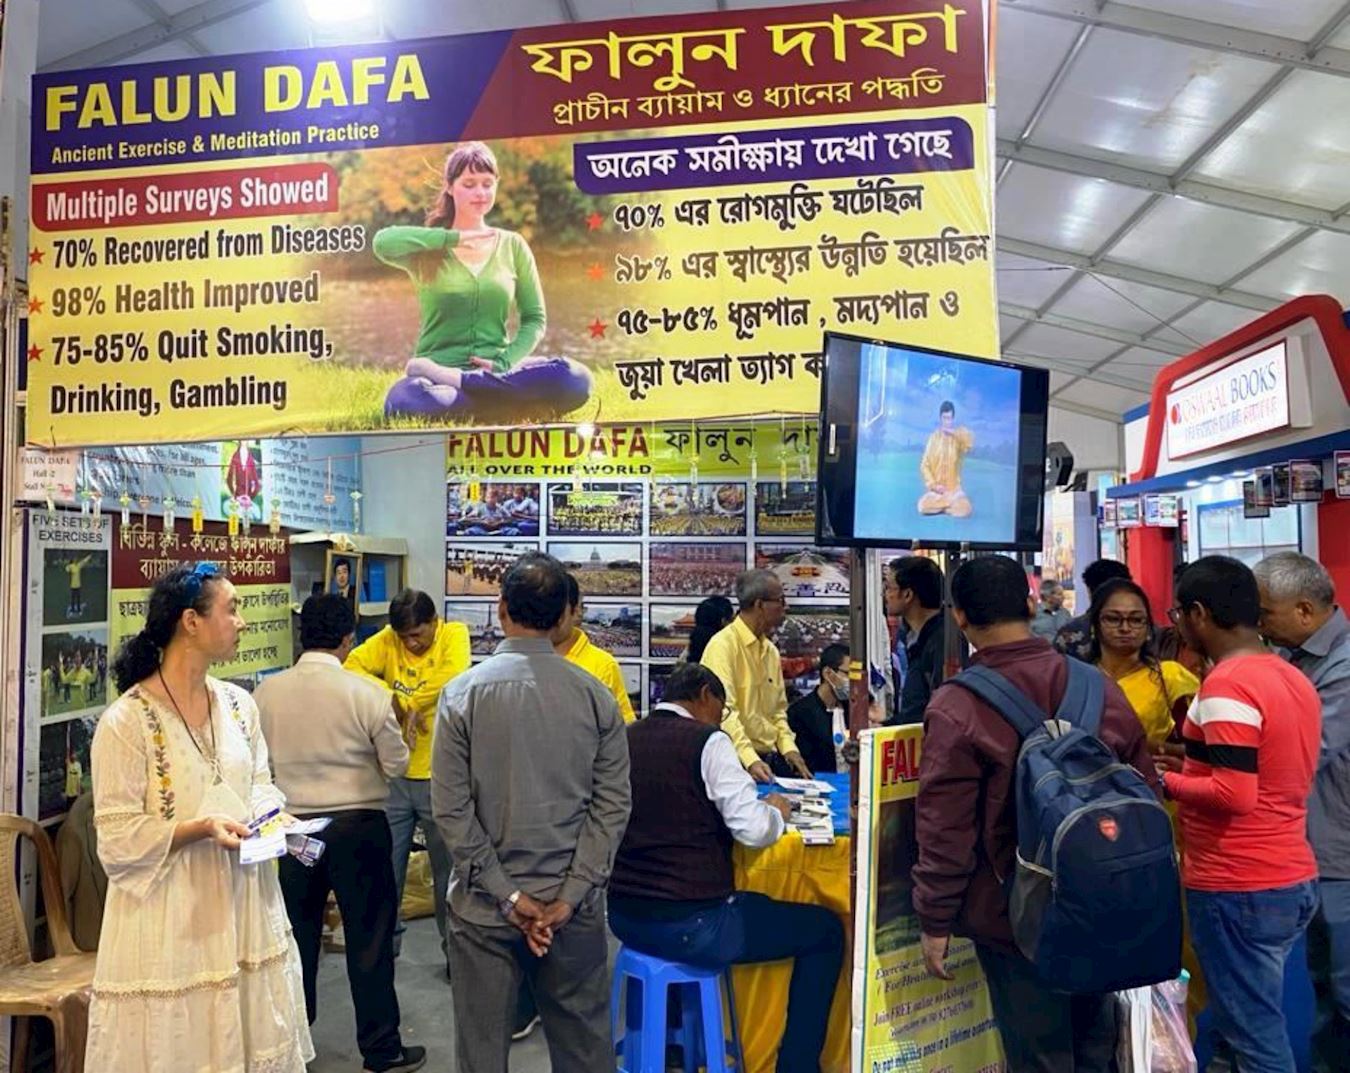 Image for article Індія. Фалунь Дафа з теплотою привітали на 47-му міжнародному книжковому ярмарку в Колкаті